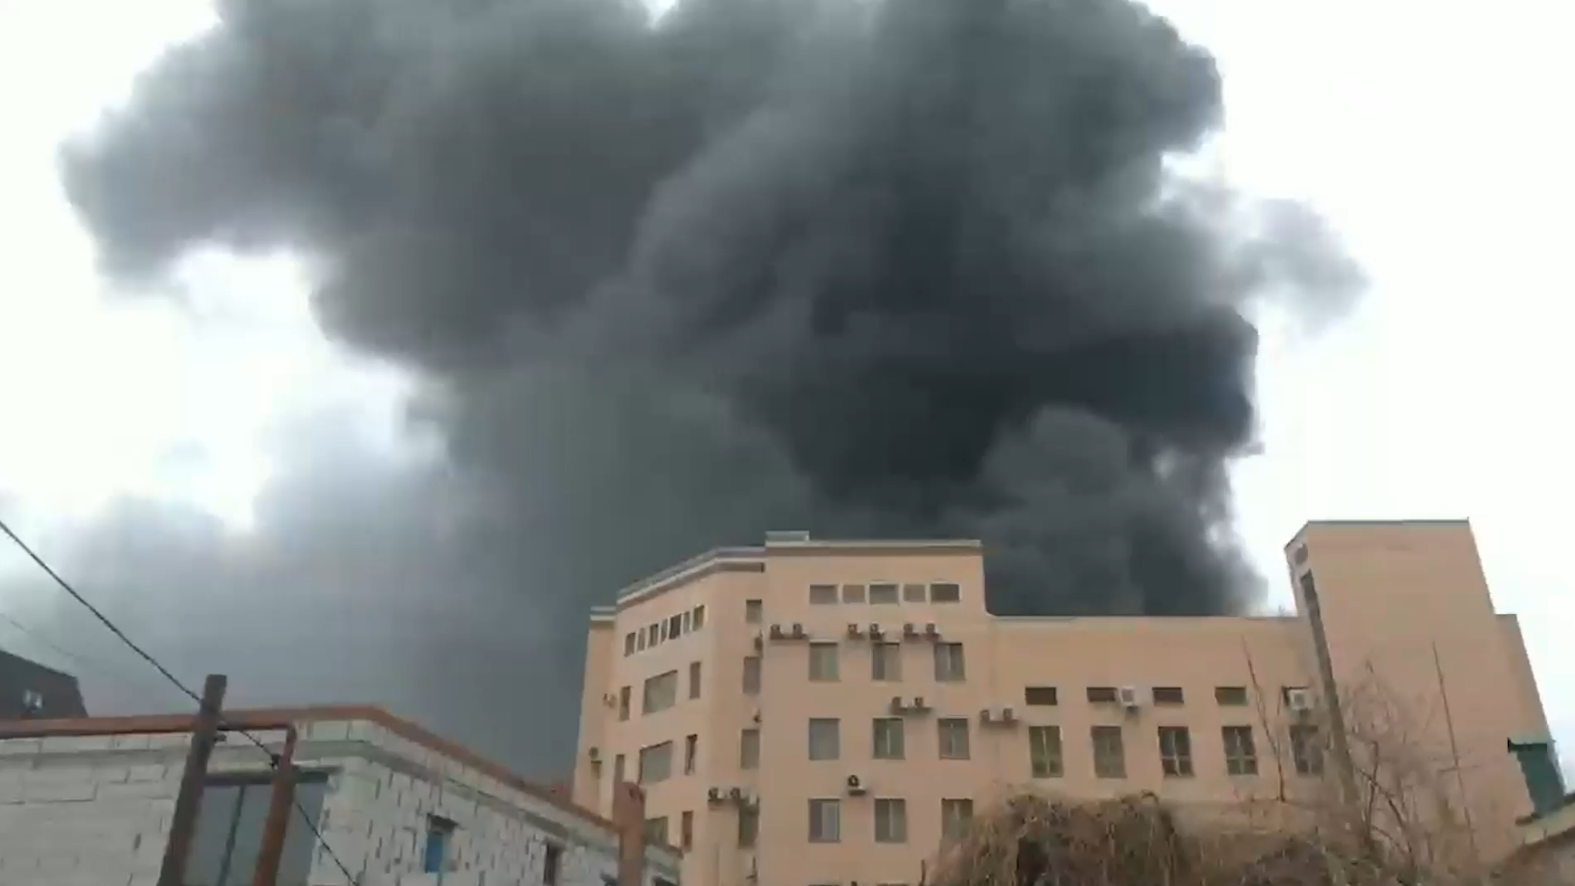 З'явилися нові деталі про вибух у будівлі ФСБ у Ростові: жертви все ж є, влада приховувала правду